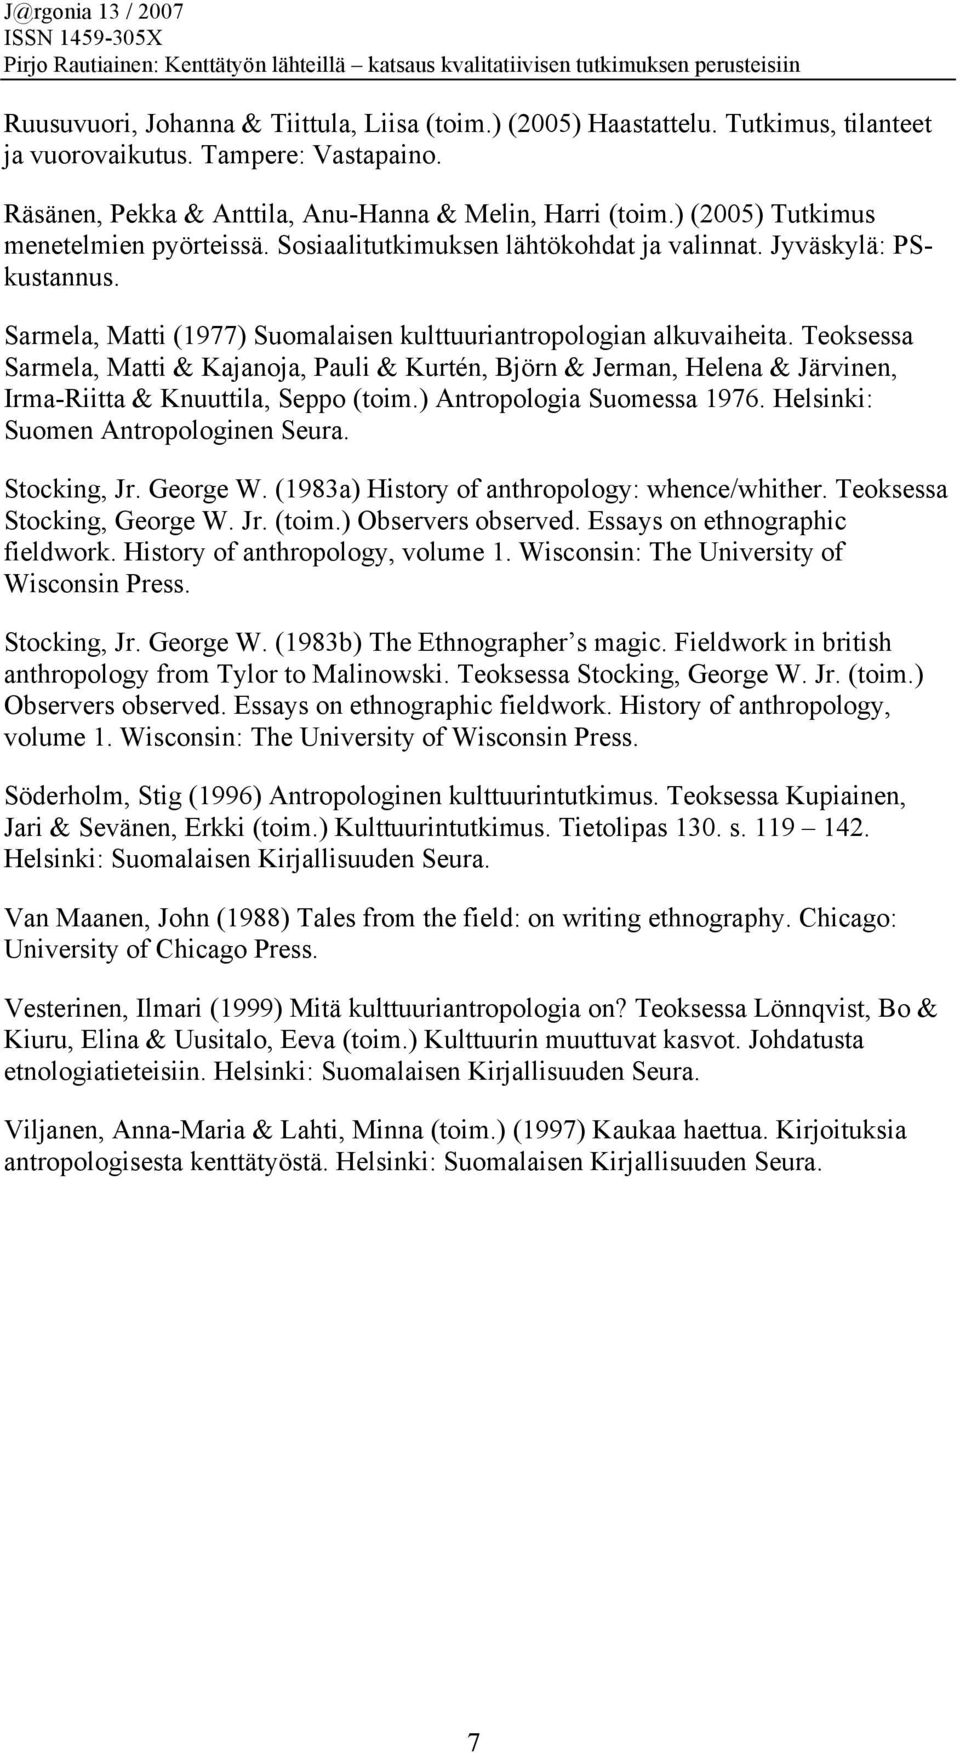 Teoksessa Sarmela, Matti & Kajanoja, Pauli & Kurtén, Björn & Jerman, Helena & Järvinen, Irma-Riitta & Knuuttila, Seppo (toim.) Antropologia Suomessa 1976. Helsinki: Suomen Antropologinen Seura.